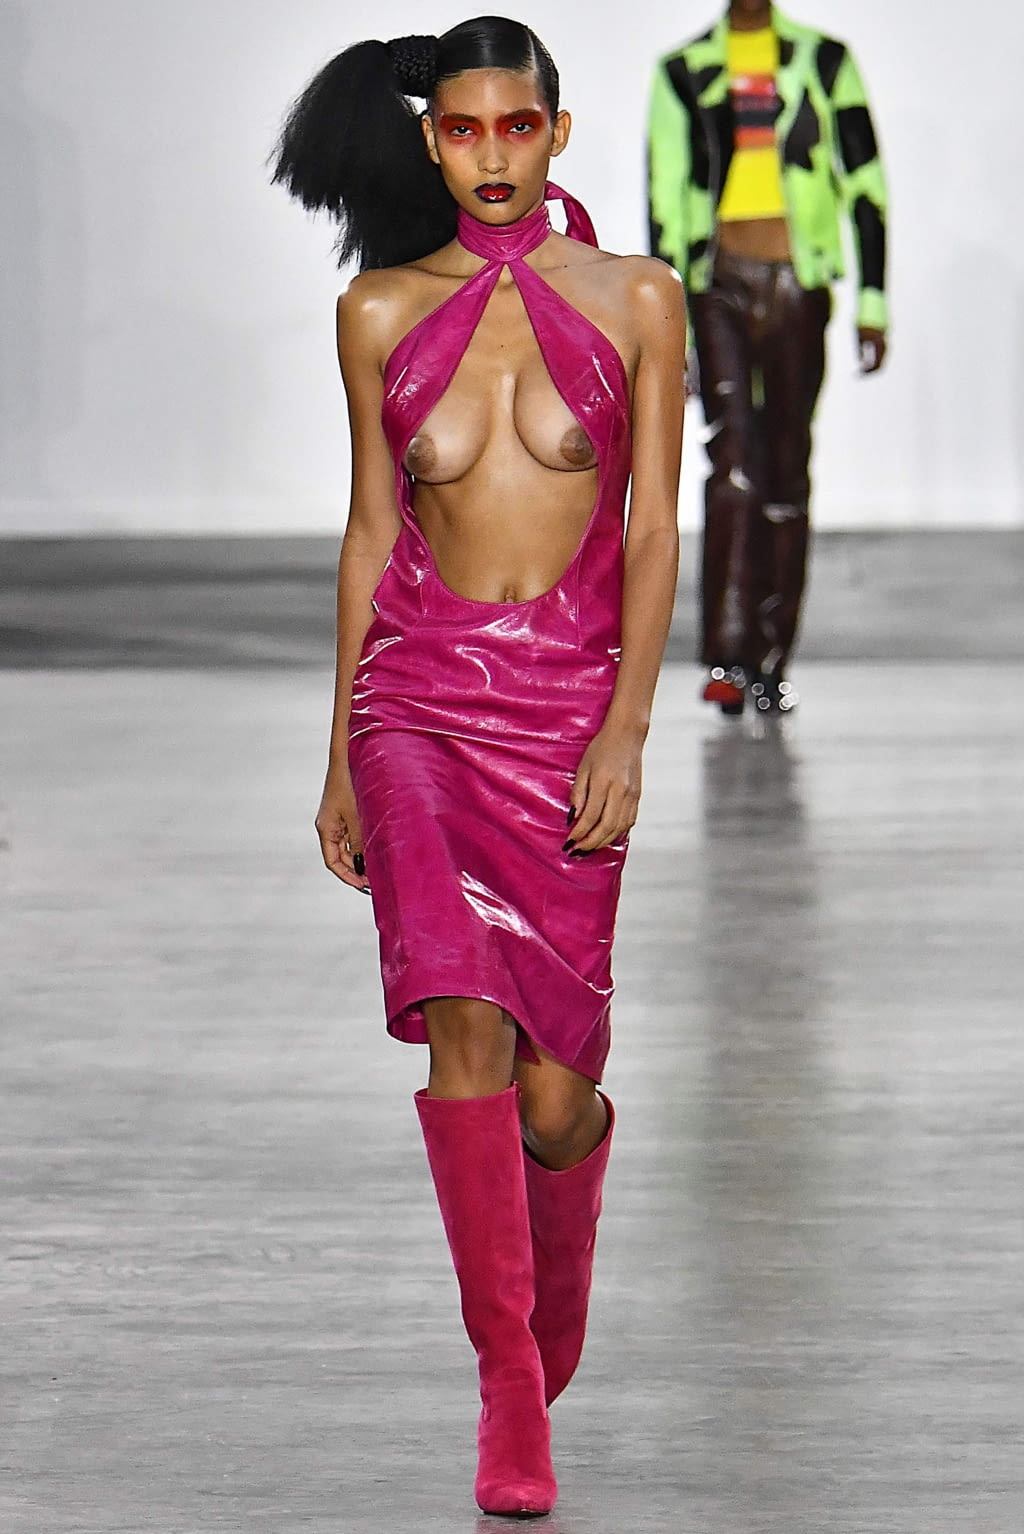 Louis Vuitton SS20 menswear #34 - Tagwalk: The Fashion Search Engine